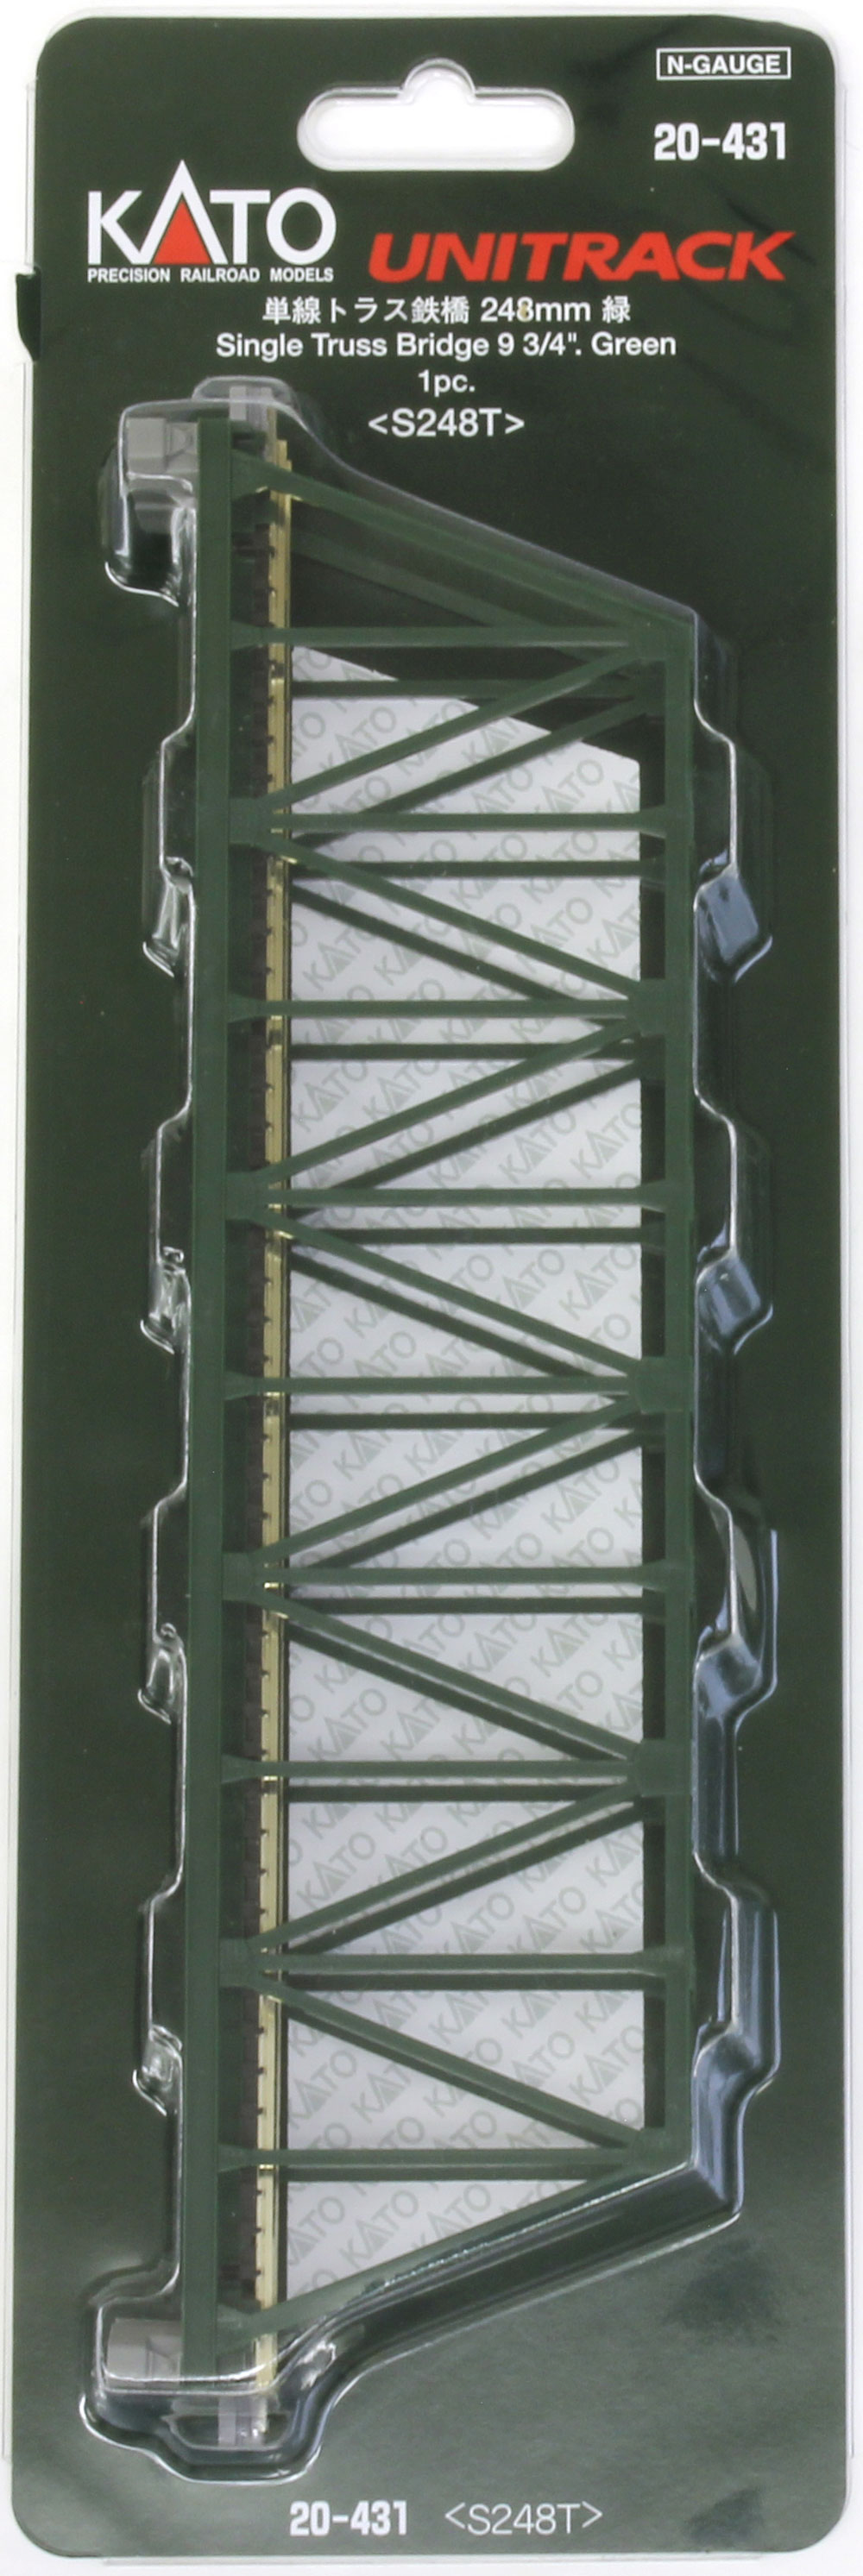 単線トラス鉄橋 (各種) | KATO(カトー) 20-430 20-431 20-432 鉄道模型 Nゲージ 通販